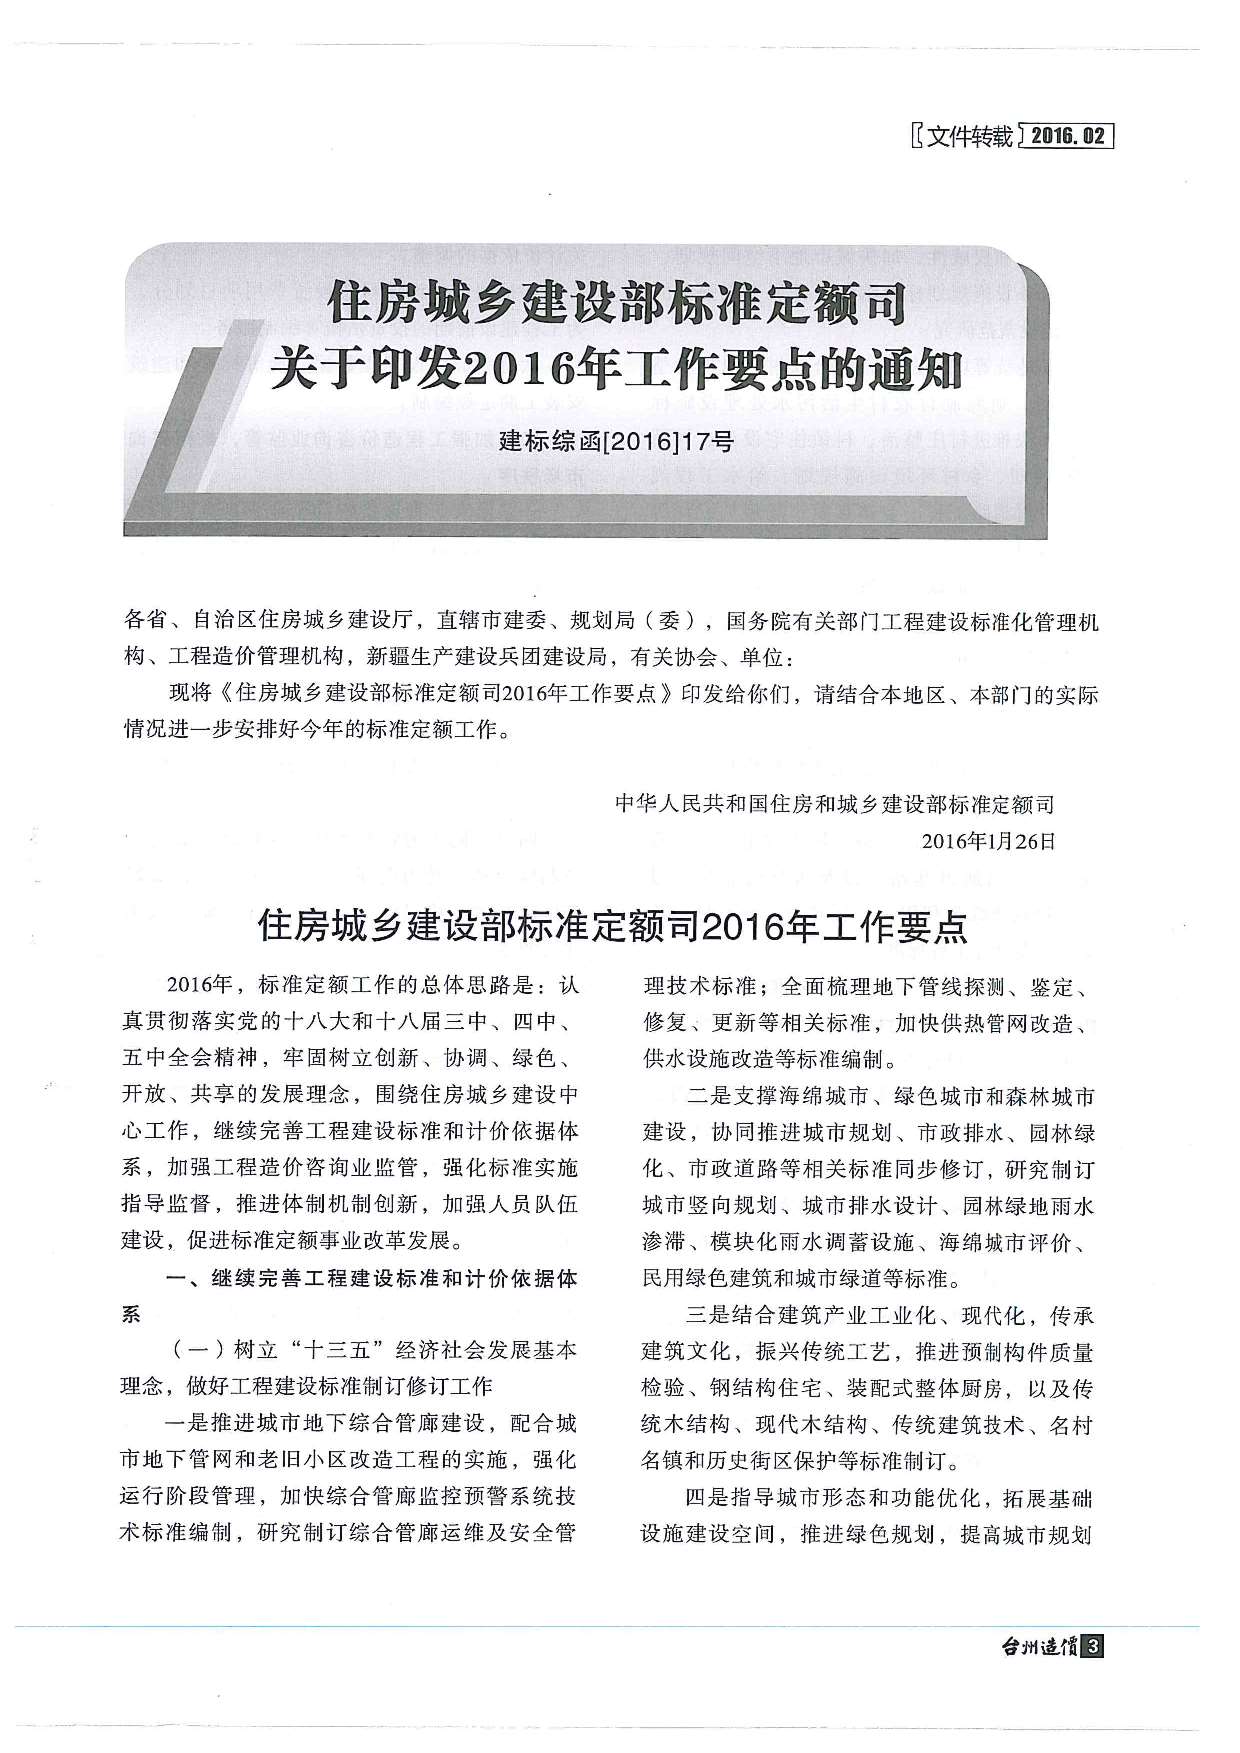 台州市2016年2月工程信息价_台州市信息价期刊PDF扫描件电子版